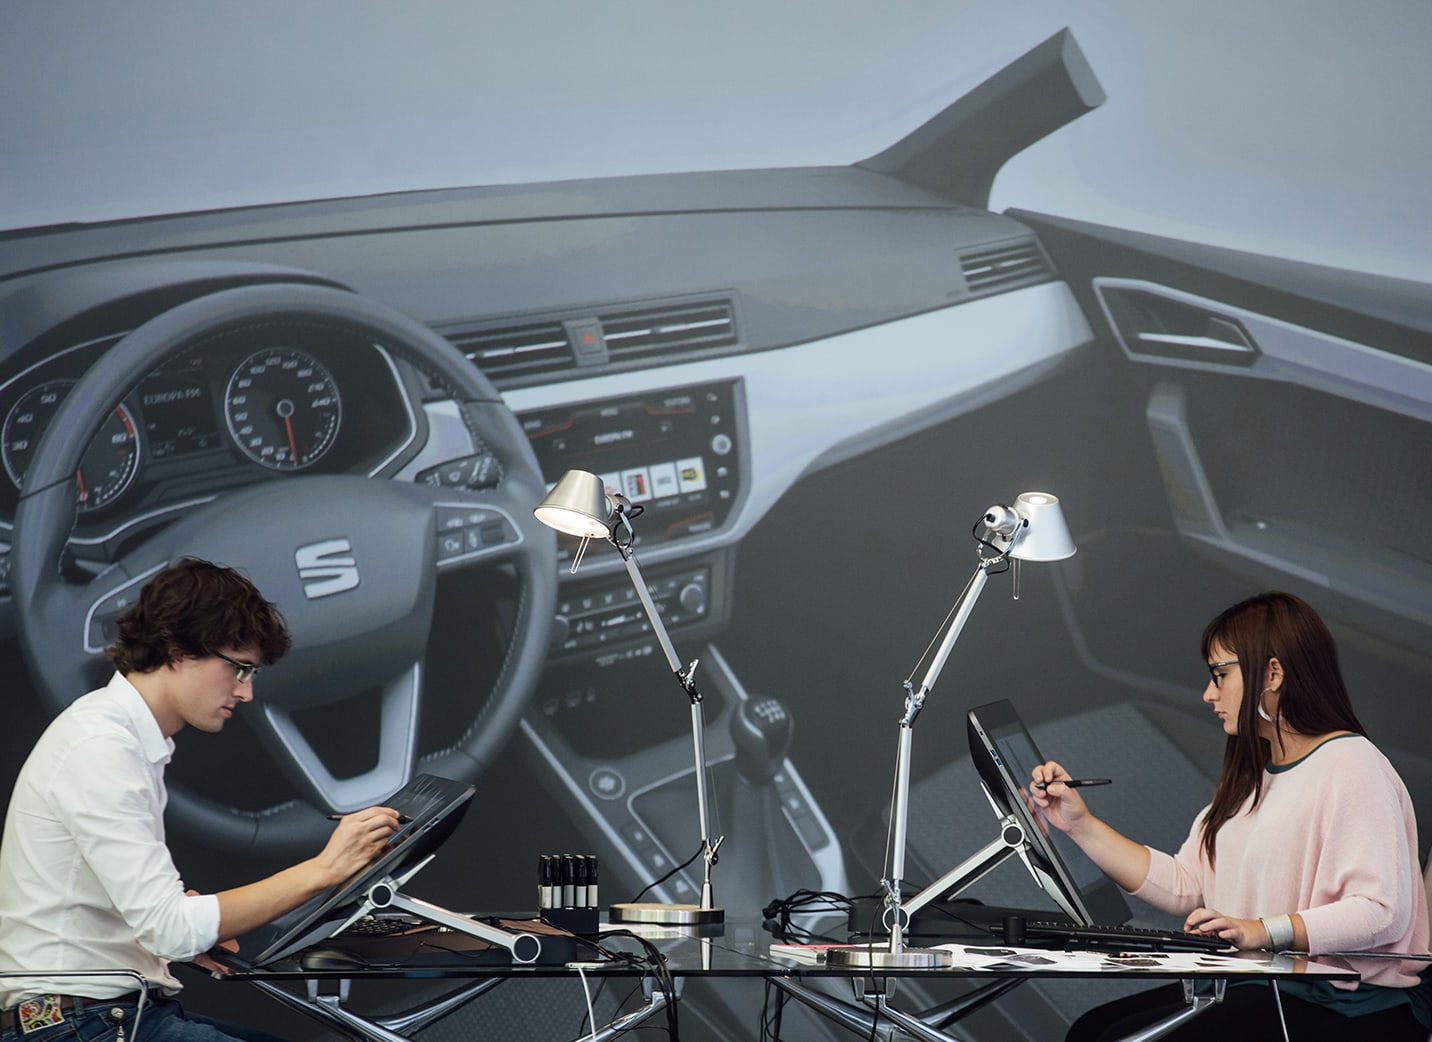 Två nybilsdesigners ritar på elektroniska indikeringsenheter mot en fotobakgrund som visar insidan av en bil – SEAT Human Resources